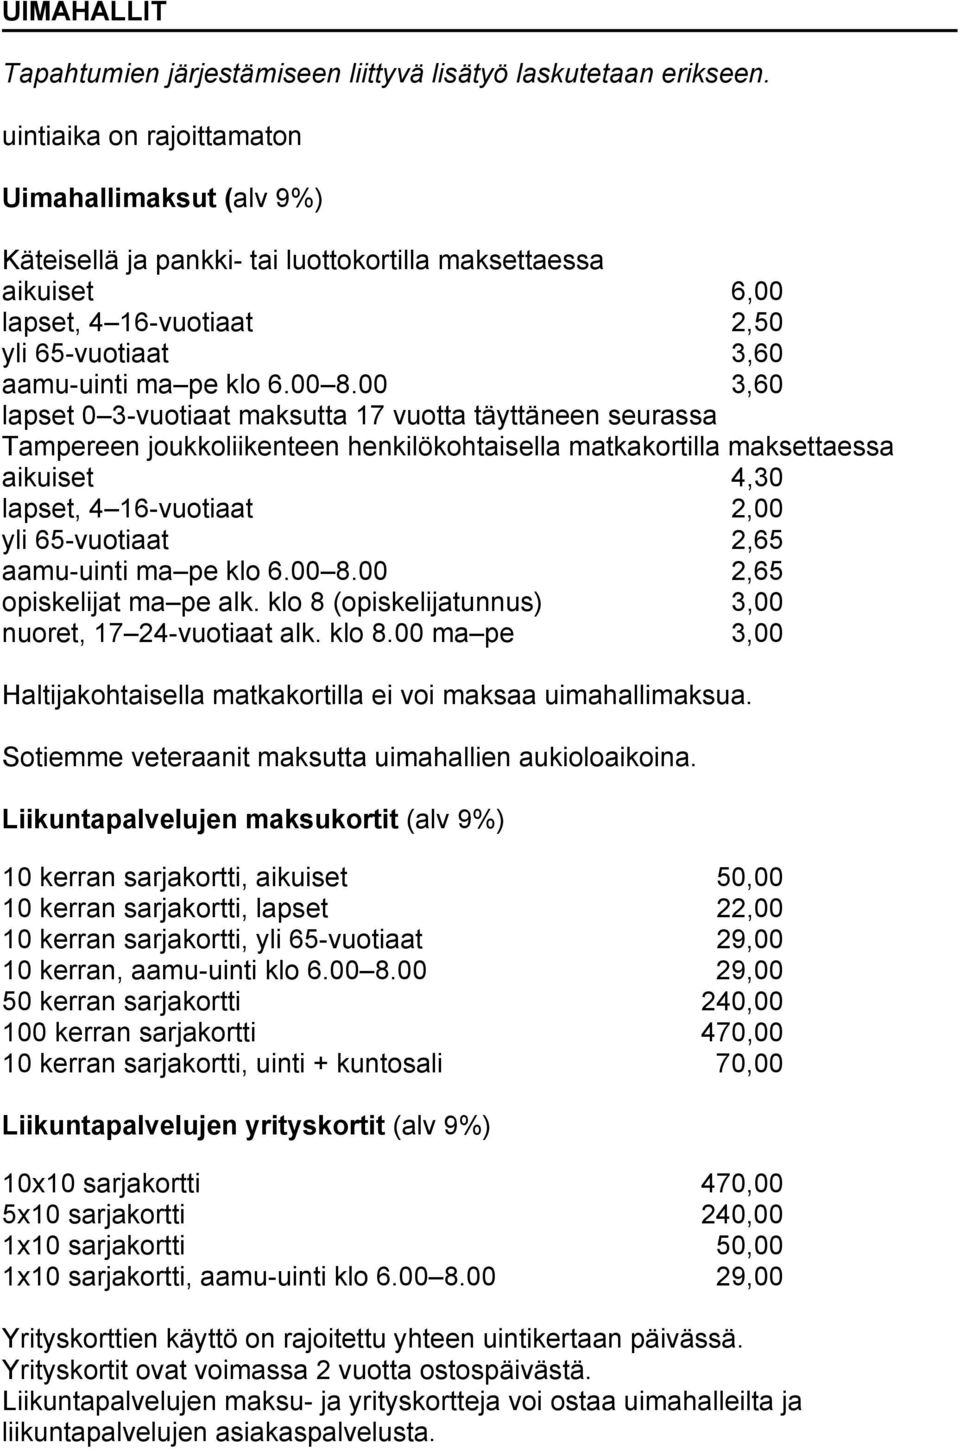 00 3,60 lapset 0 3-vuotiaat maksutta 17 vuotta täyttäneen seurassa Tampereen joukkoliikenteen henkilökohtaisella matkakortilla maksettaessa aikuiset 4,30 lapset, 4 16-vuotiaat 2,00 yli 65-vuotiaat